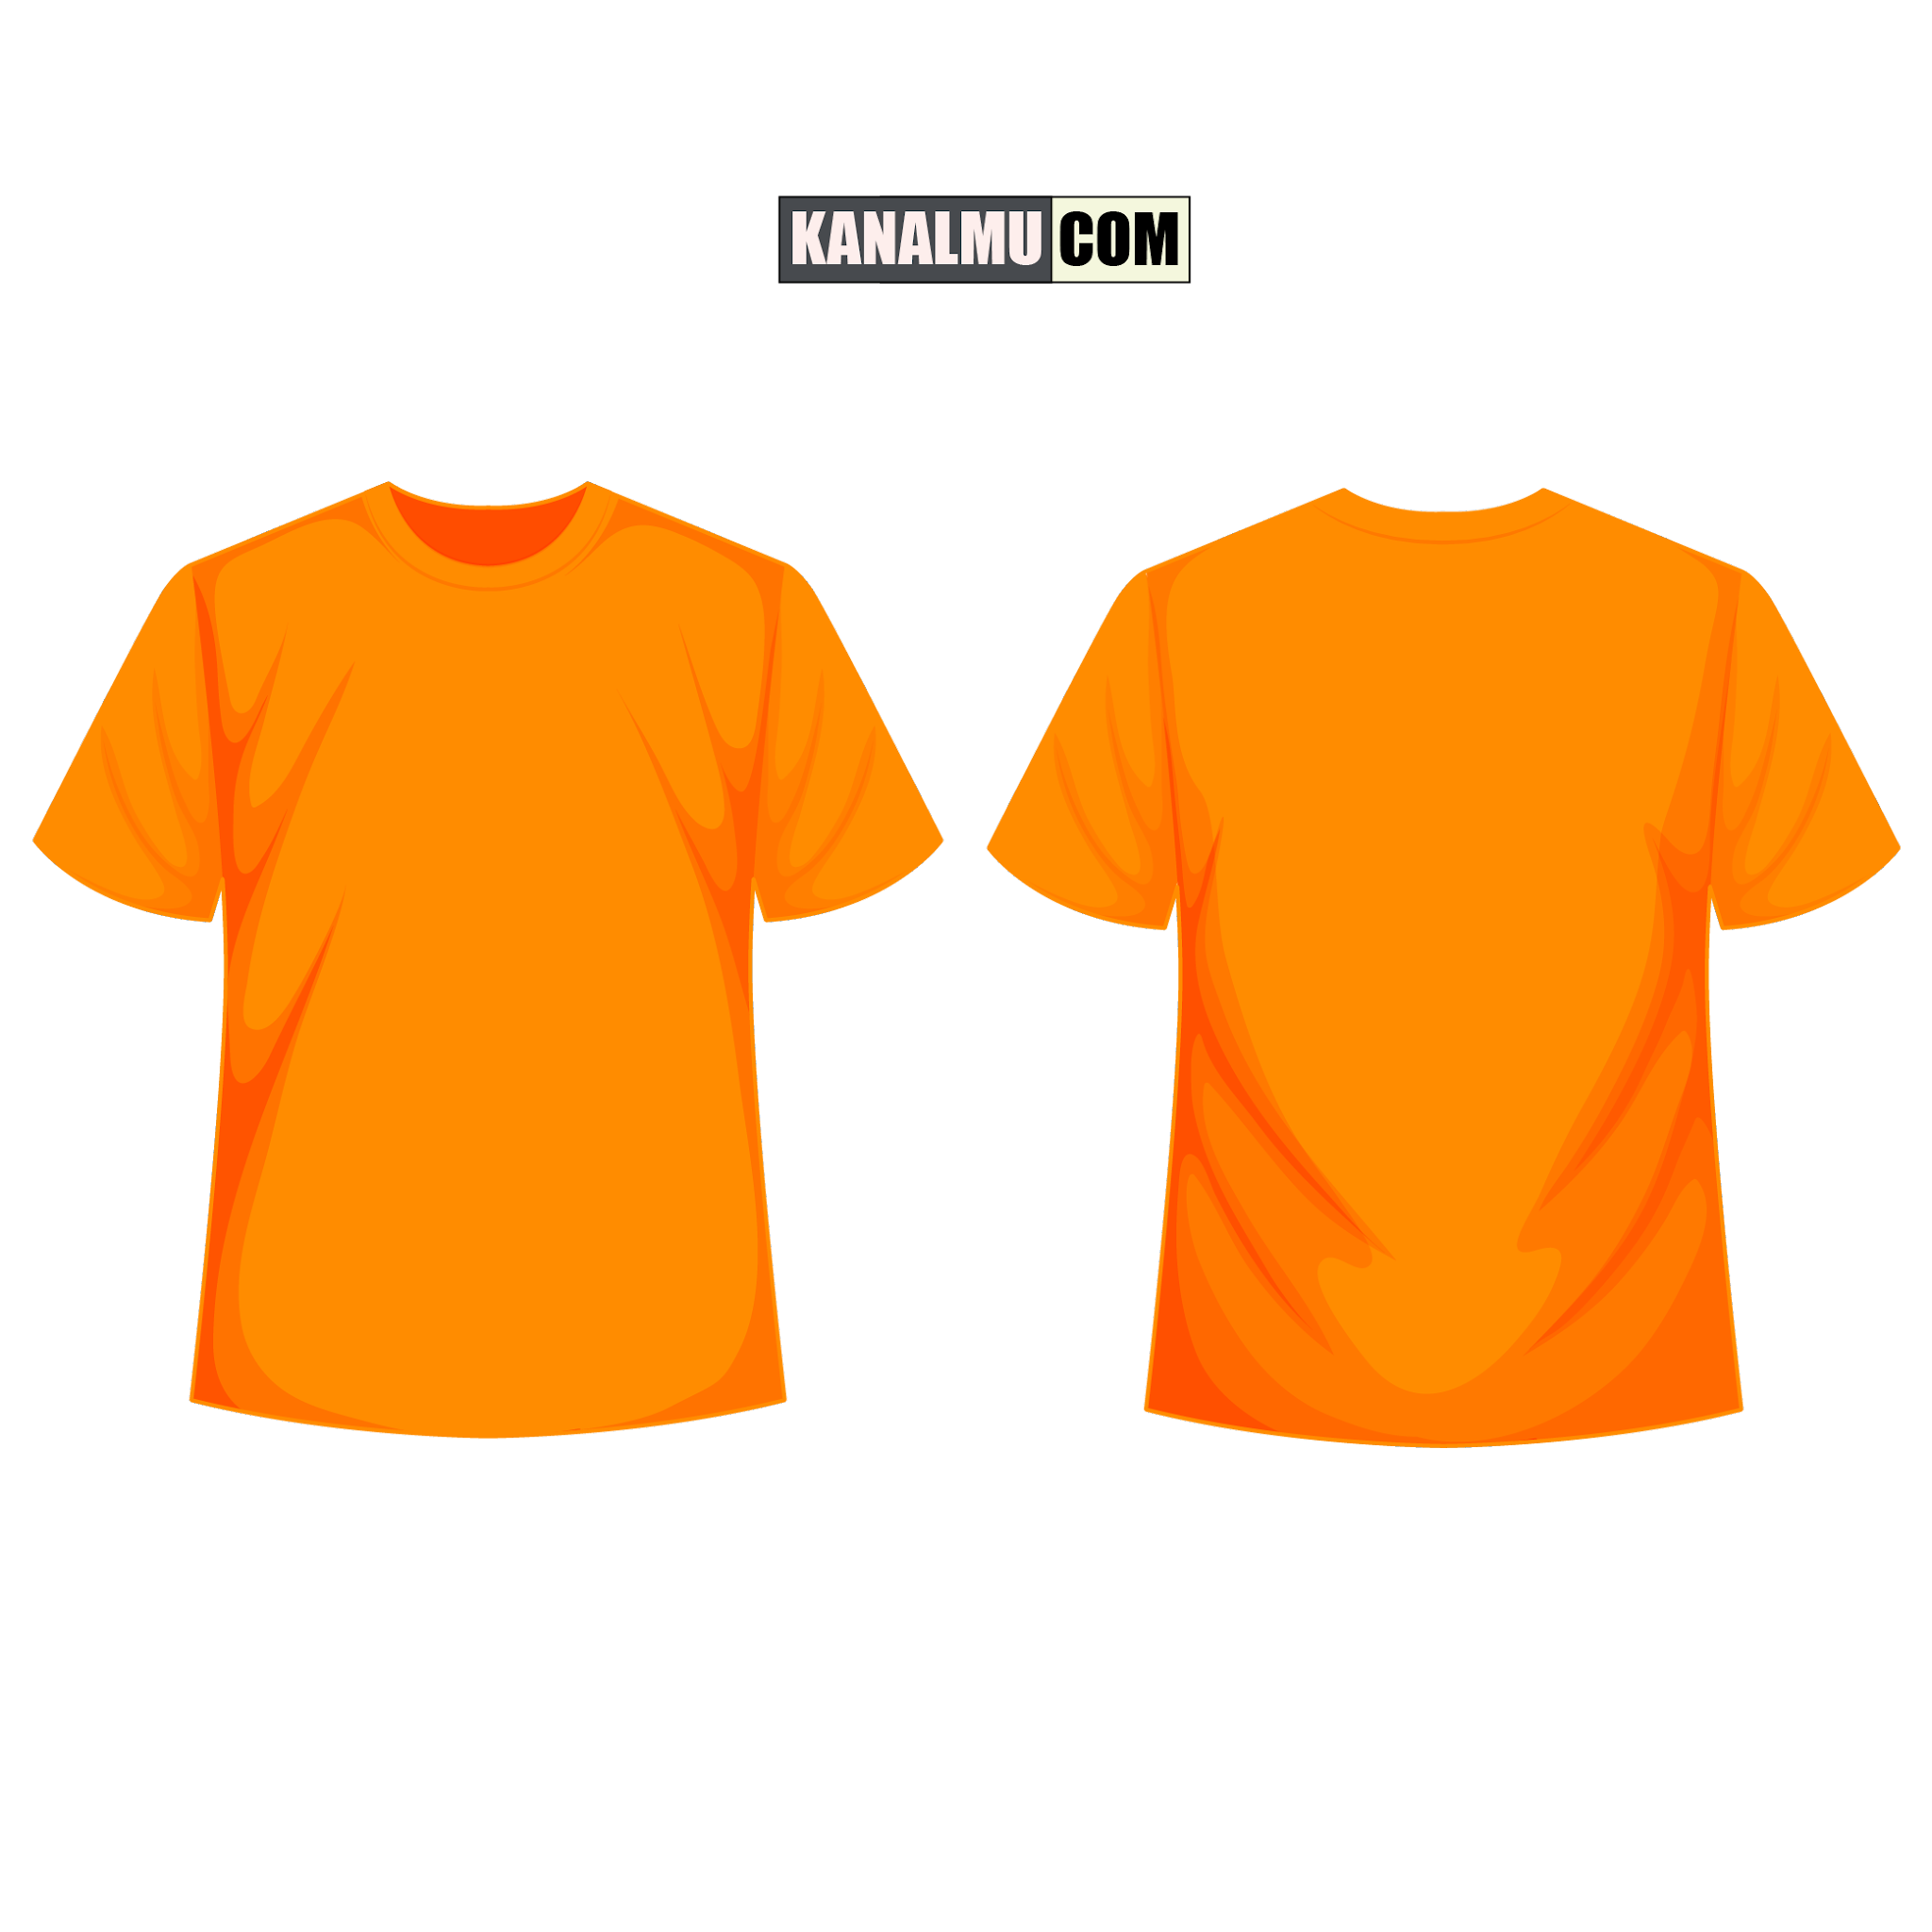 desain baju kaos orange depan belakang
